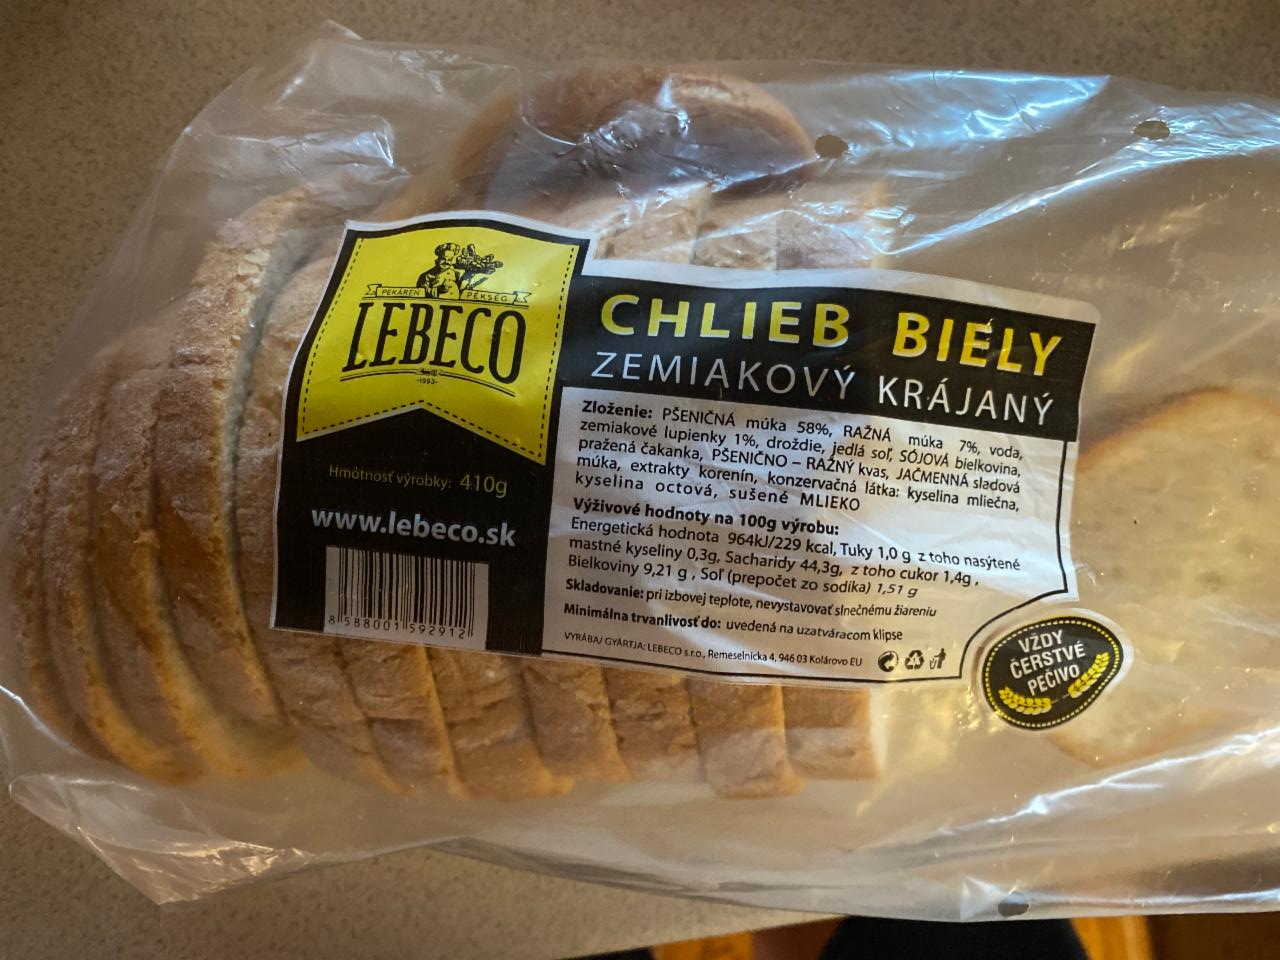 Fotografie - Chlieb biely zemiakový krájaný Lebeco